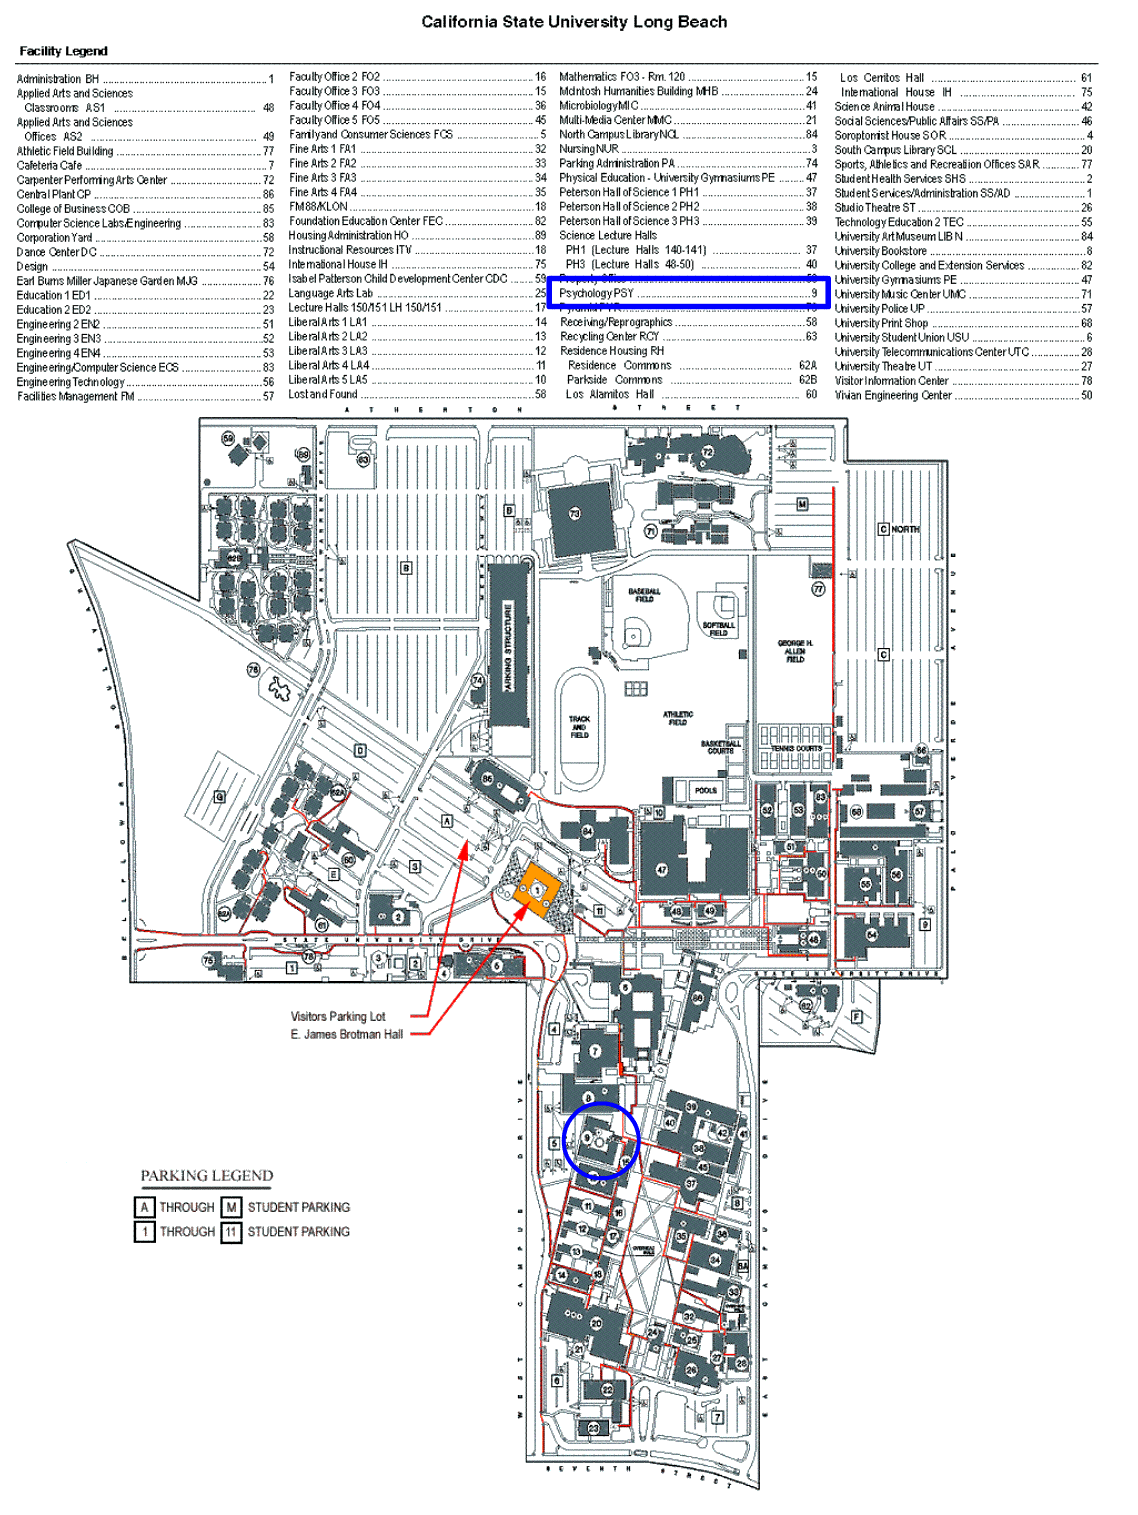 Full Usc Campus Map